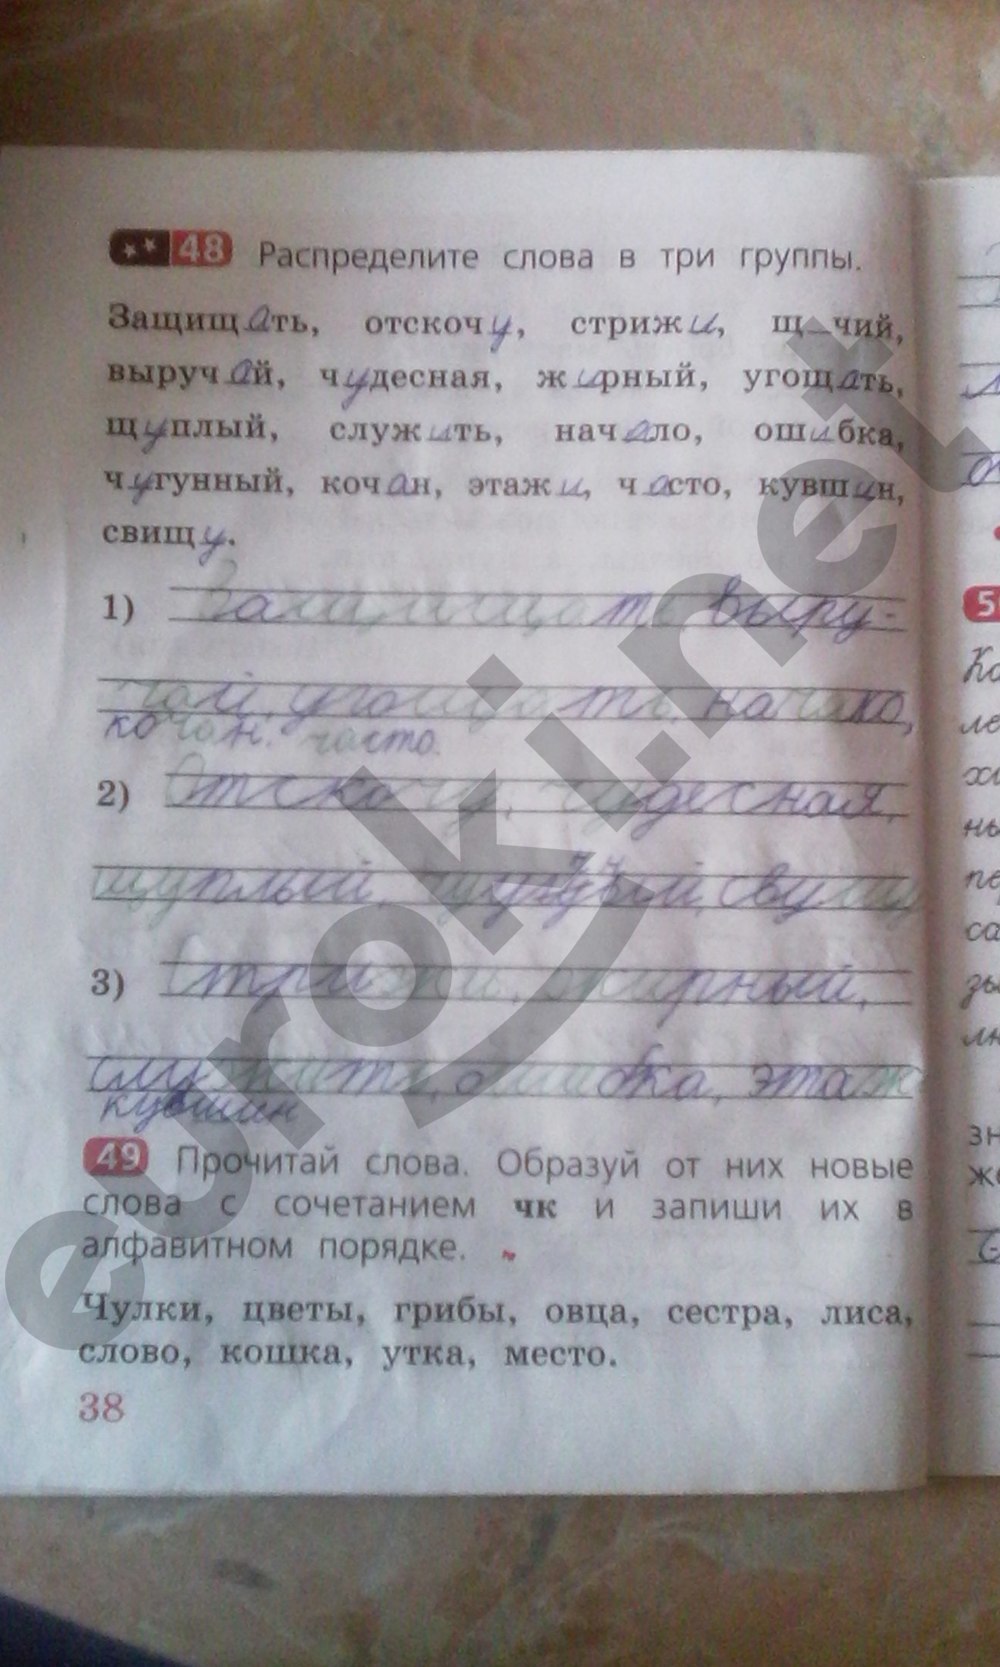 Русский язык 1 класс страница 44 ответы